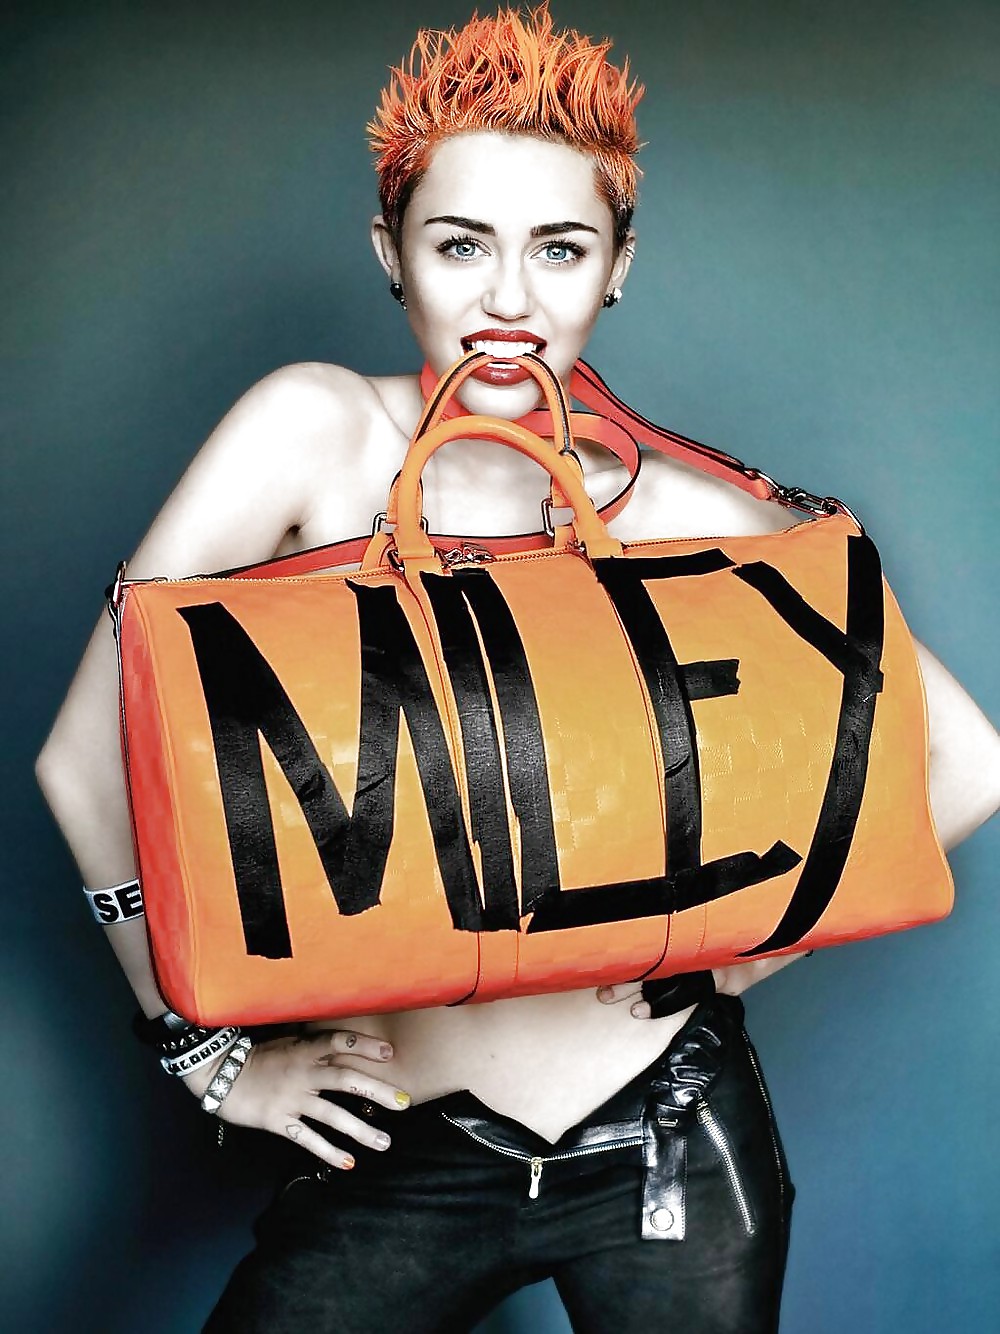 Miley cyrus cuerpo caliente para la revista v
 #37027644